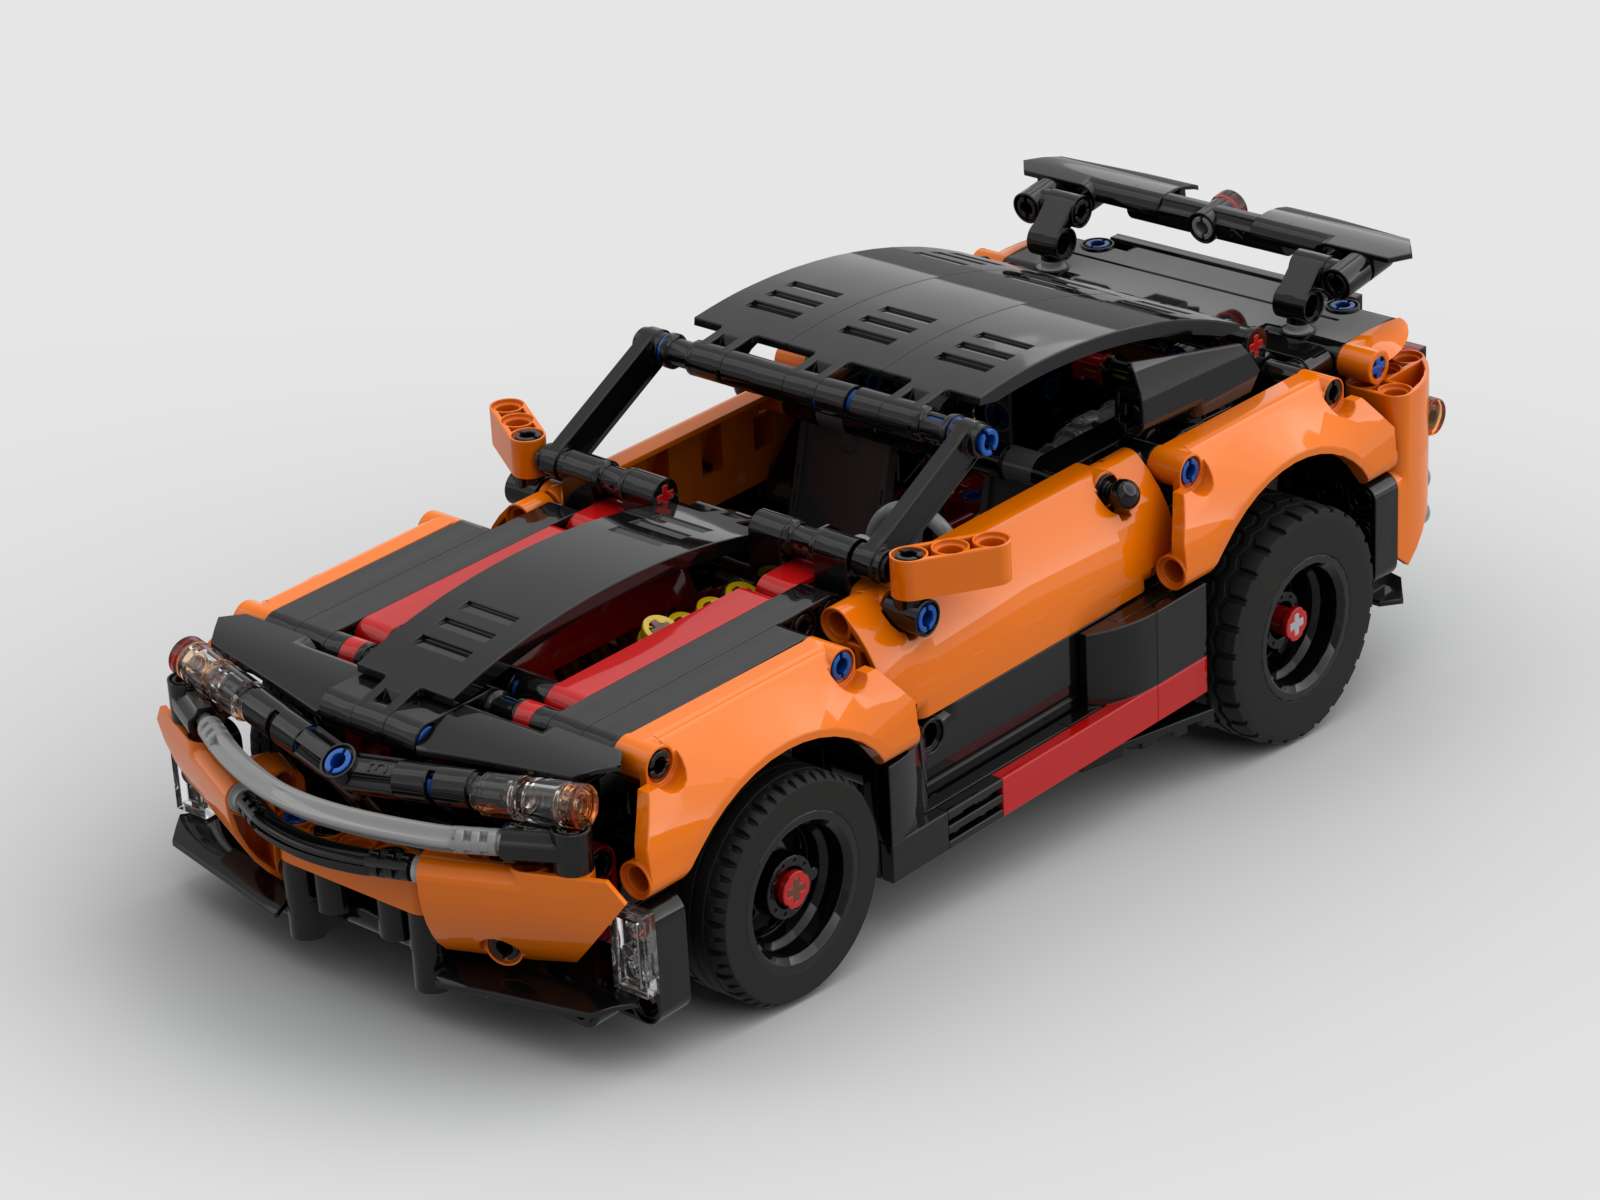 Lego 42098 Car Transporter Mods - LEGO Technic, Mindstorms, Model and Scale Modeling - Eurobricks Forums